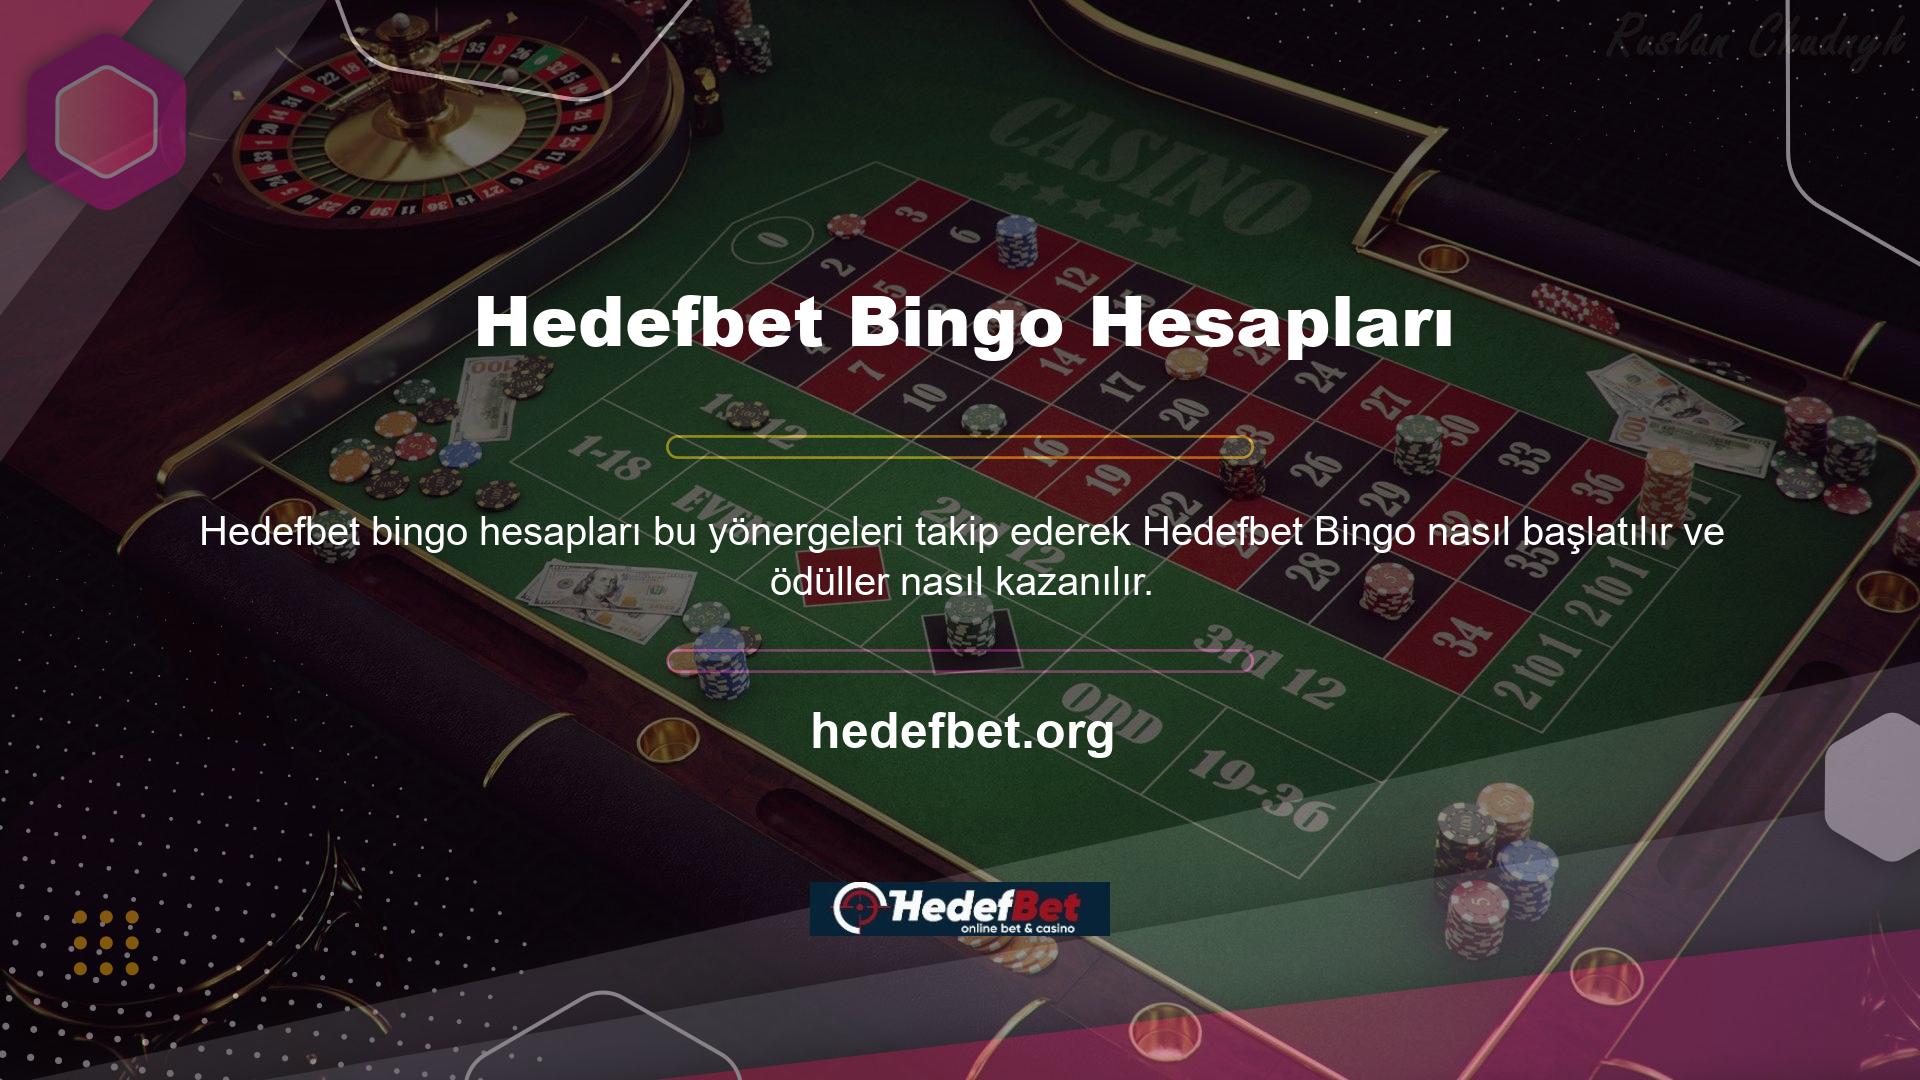 Şu anda en popüler casino oyunlarından biri Hedefbet Bingo'dur